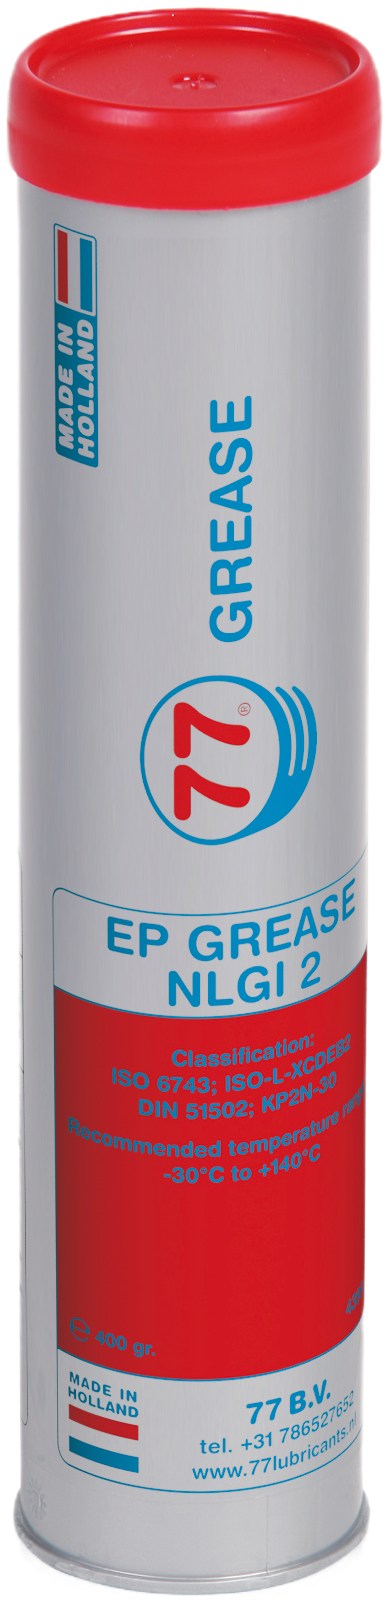 4399-0.4 EP Grease NLGI 2 van 77 lubricants is een hoogwaardige multifunctionele lithium verdikt EP-2 vet geschikt voor automotive, landbouw en industriële toepassingen.